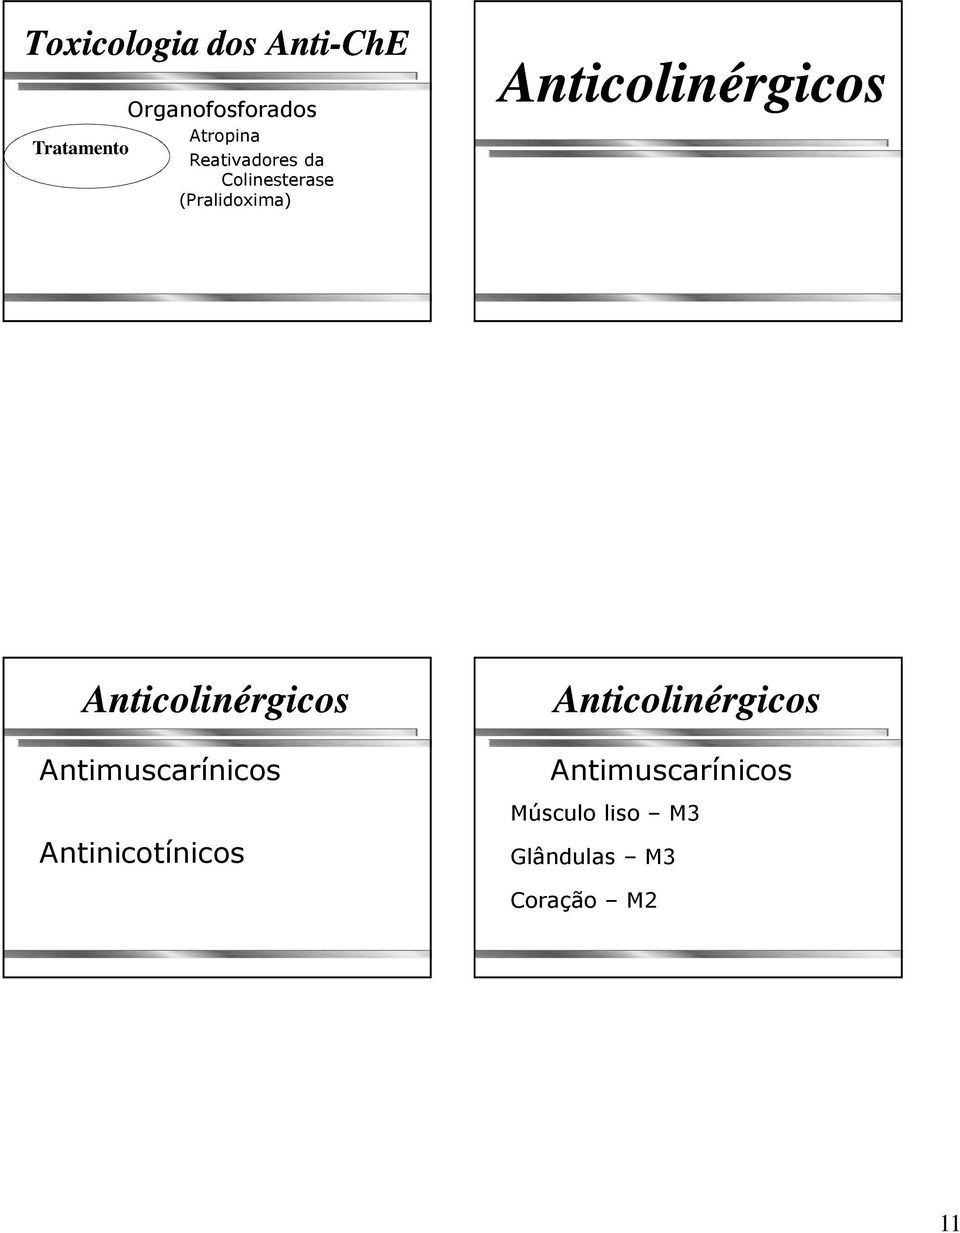 Anticolinérgicos Anticolinérgicos Anticolinérgicos